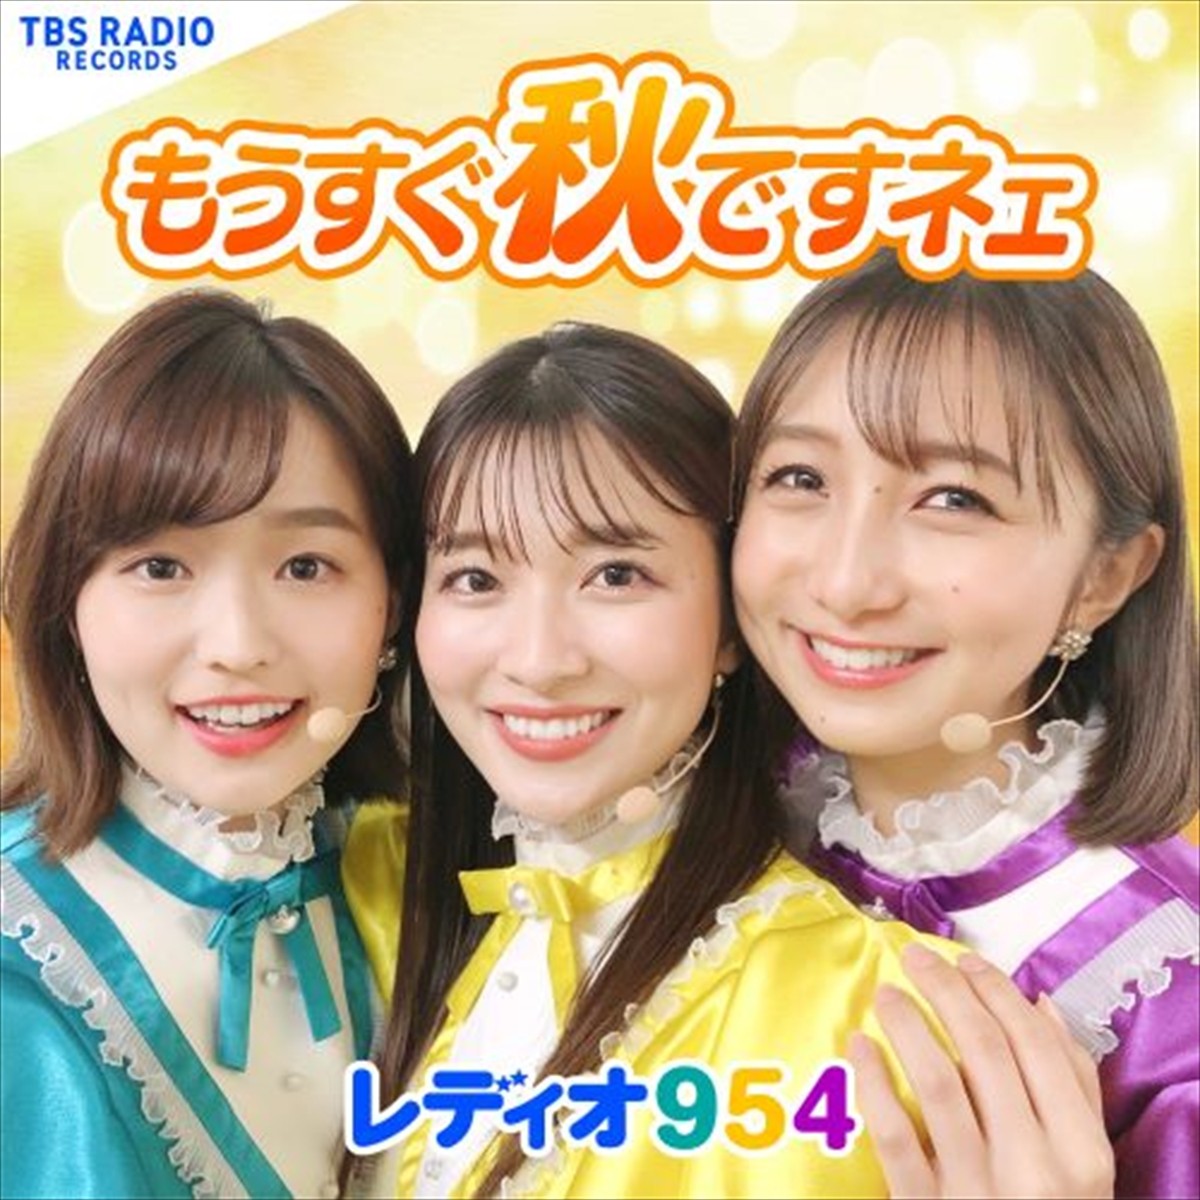 TBSラジオ『木梨の会。』から生まれたユニット“レディオ954”、山本里菜・近藤夏子・篠原梨菜アナが歌うデビュー曲配信開始